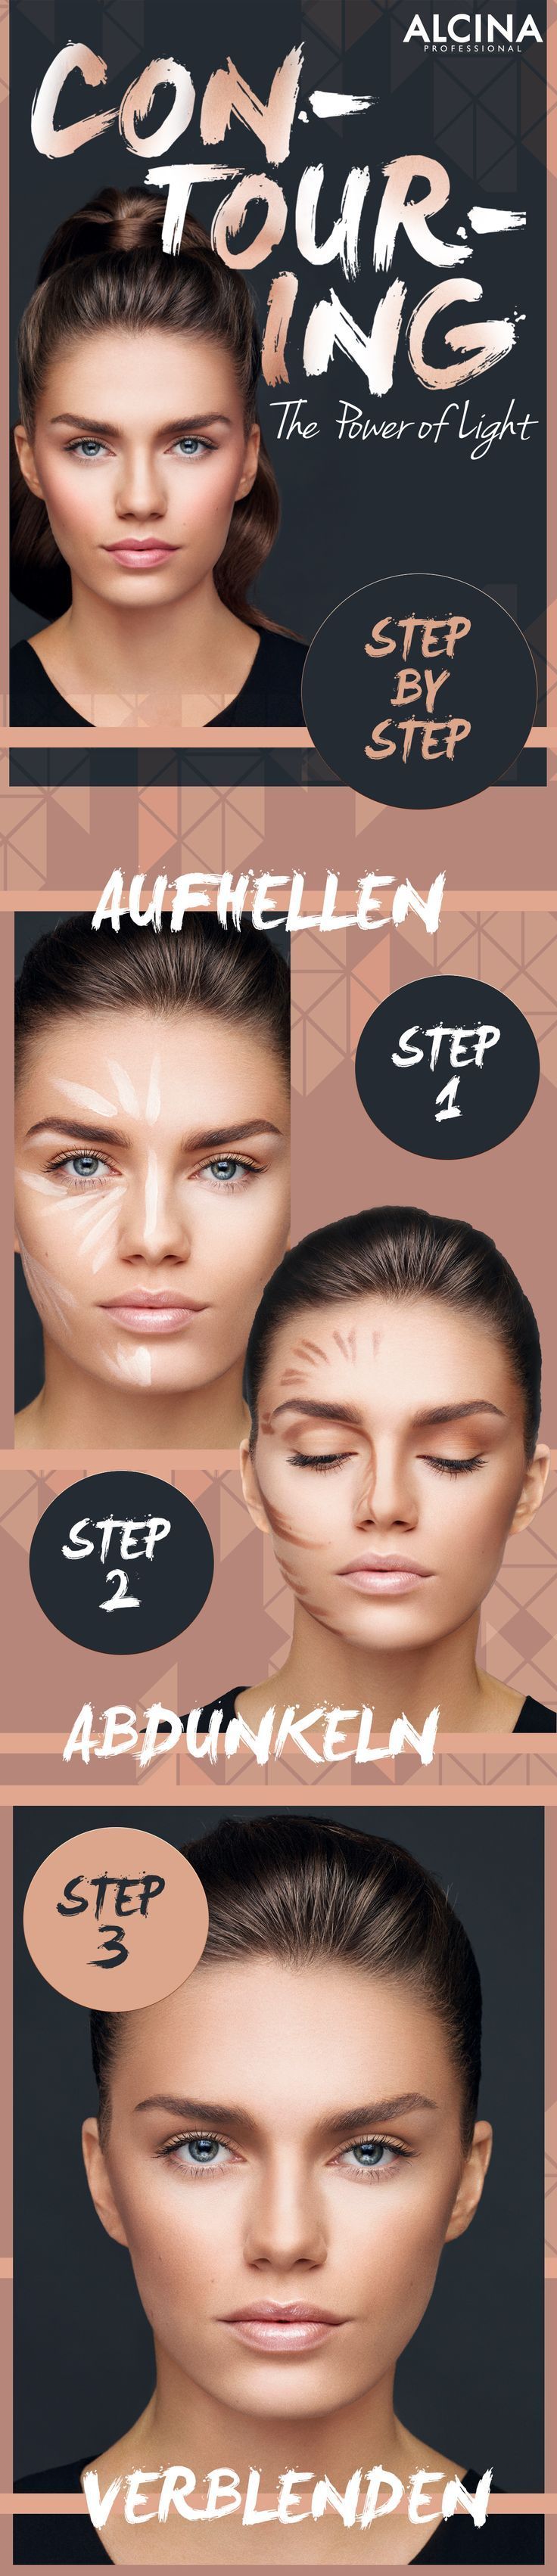 Contouring Guide: So konturierst du dein Gesicht schnell und einfach als Tages-Make-up. Die Produkte gibts im Alcina Shop.